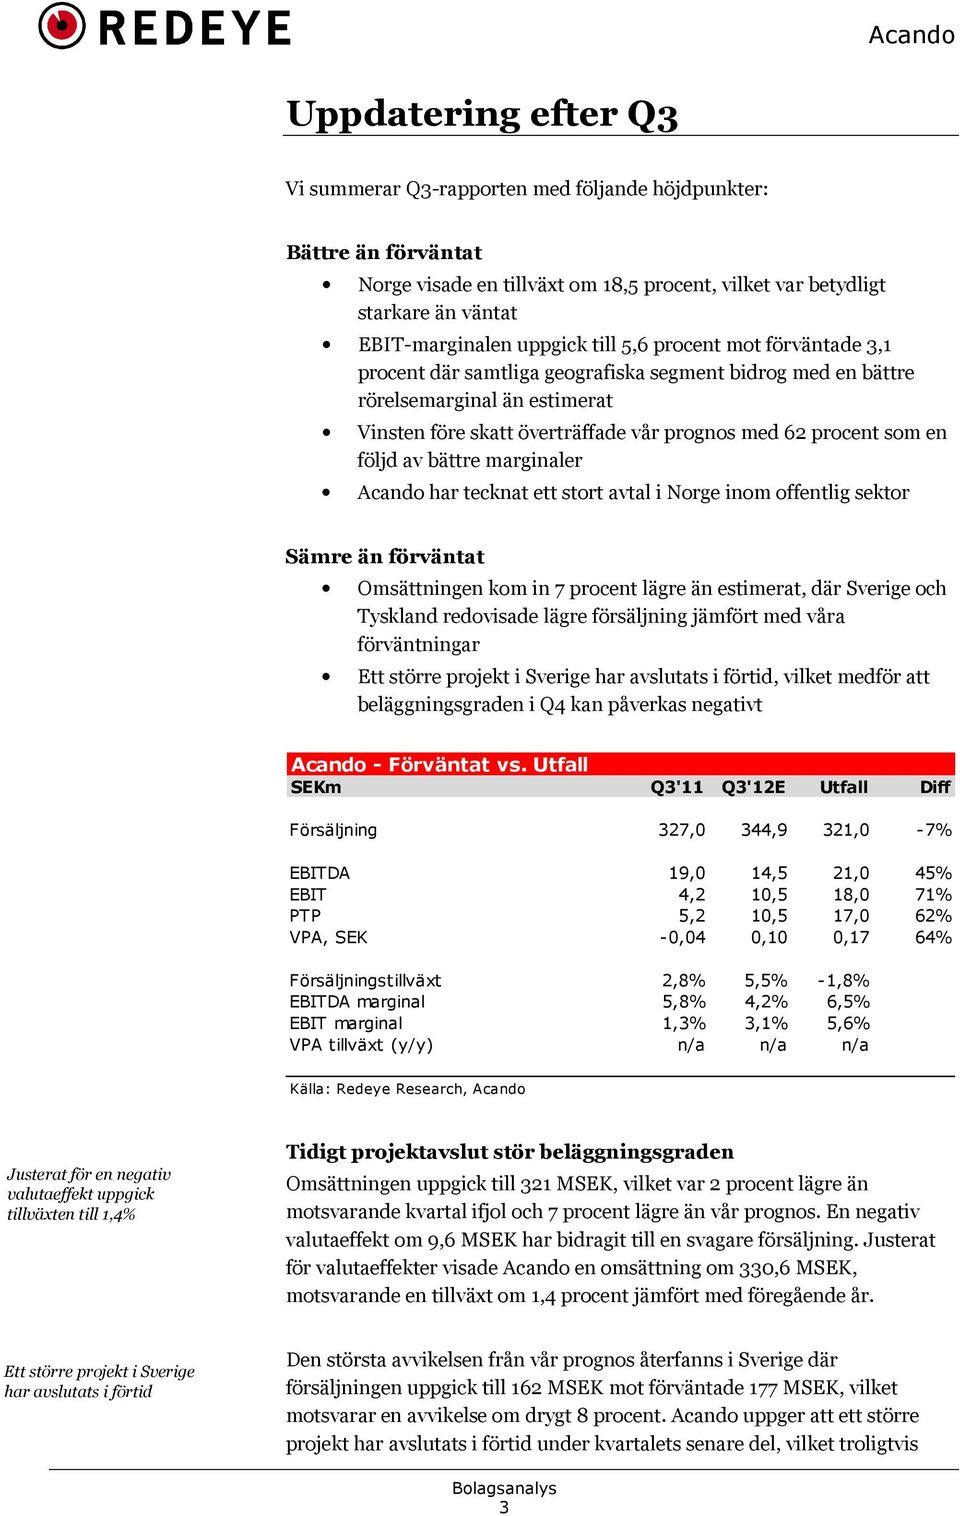 av bättre marginaler Acando har tecknat ett stort avtal i Norge inom offentlig sektor Sämre än förväntat Omsättningen kom in 7 procent lägre än estimerat, där Sverige och Tyskland redovisade lägre